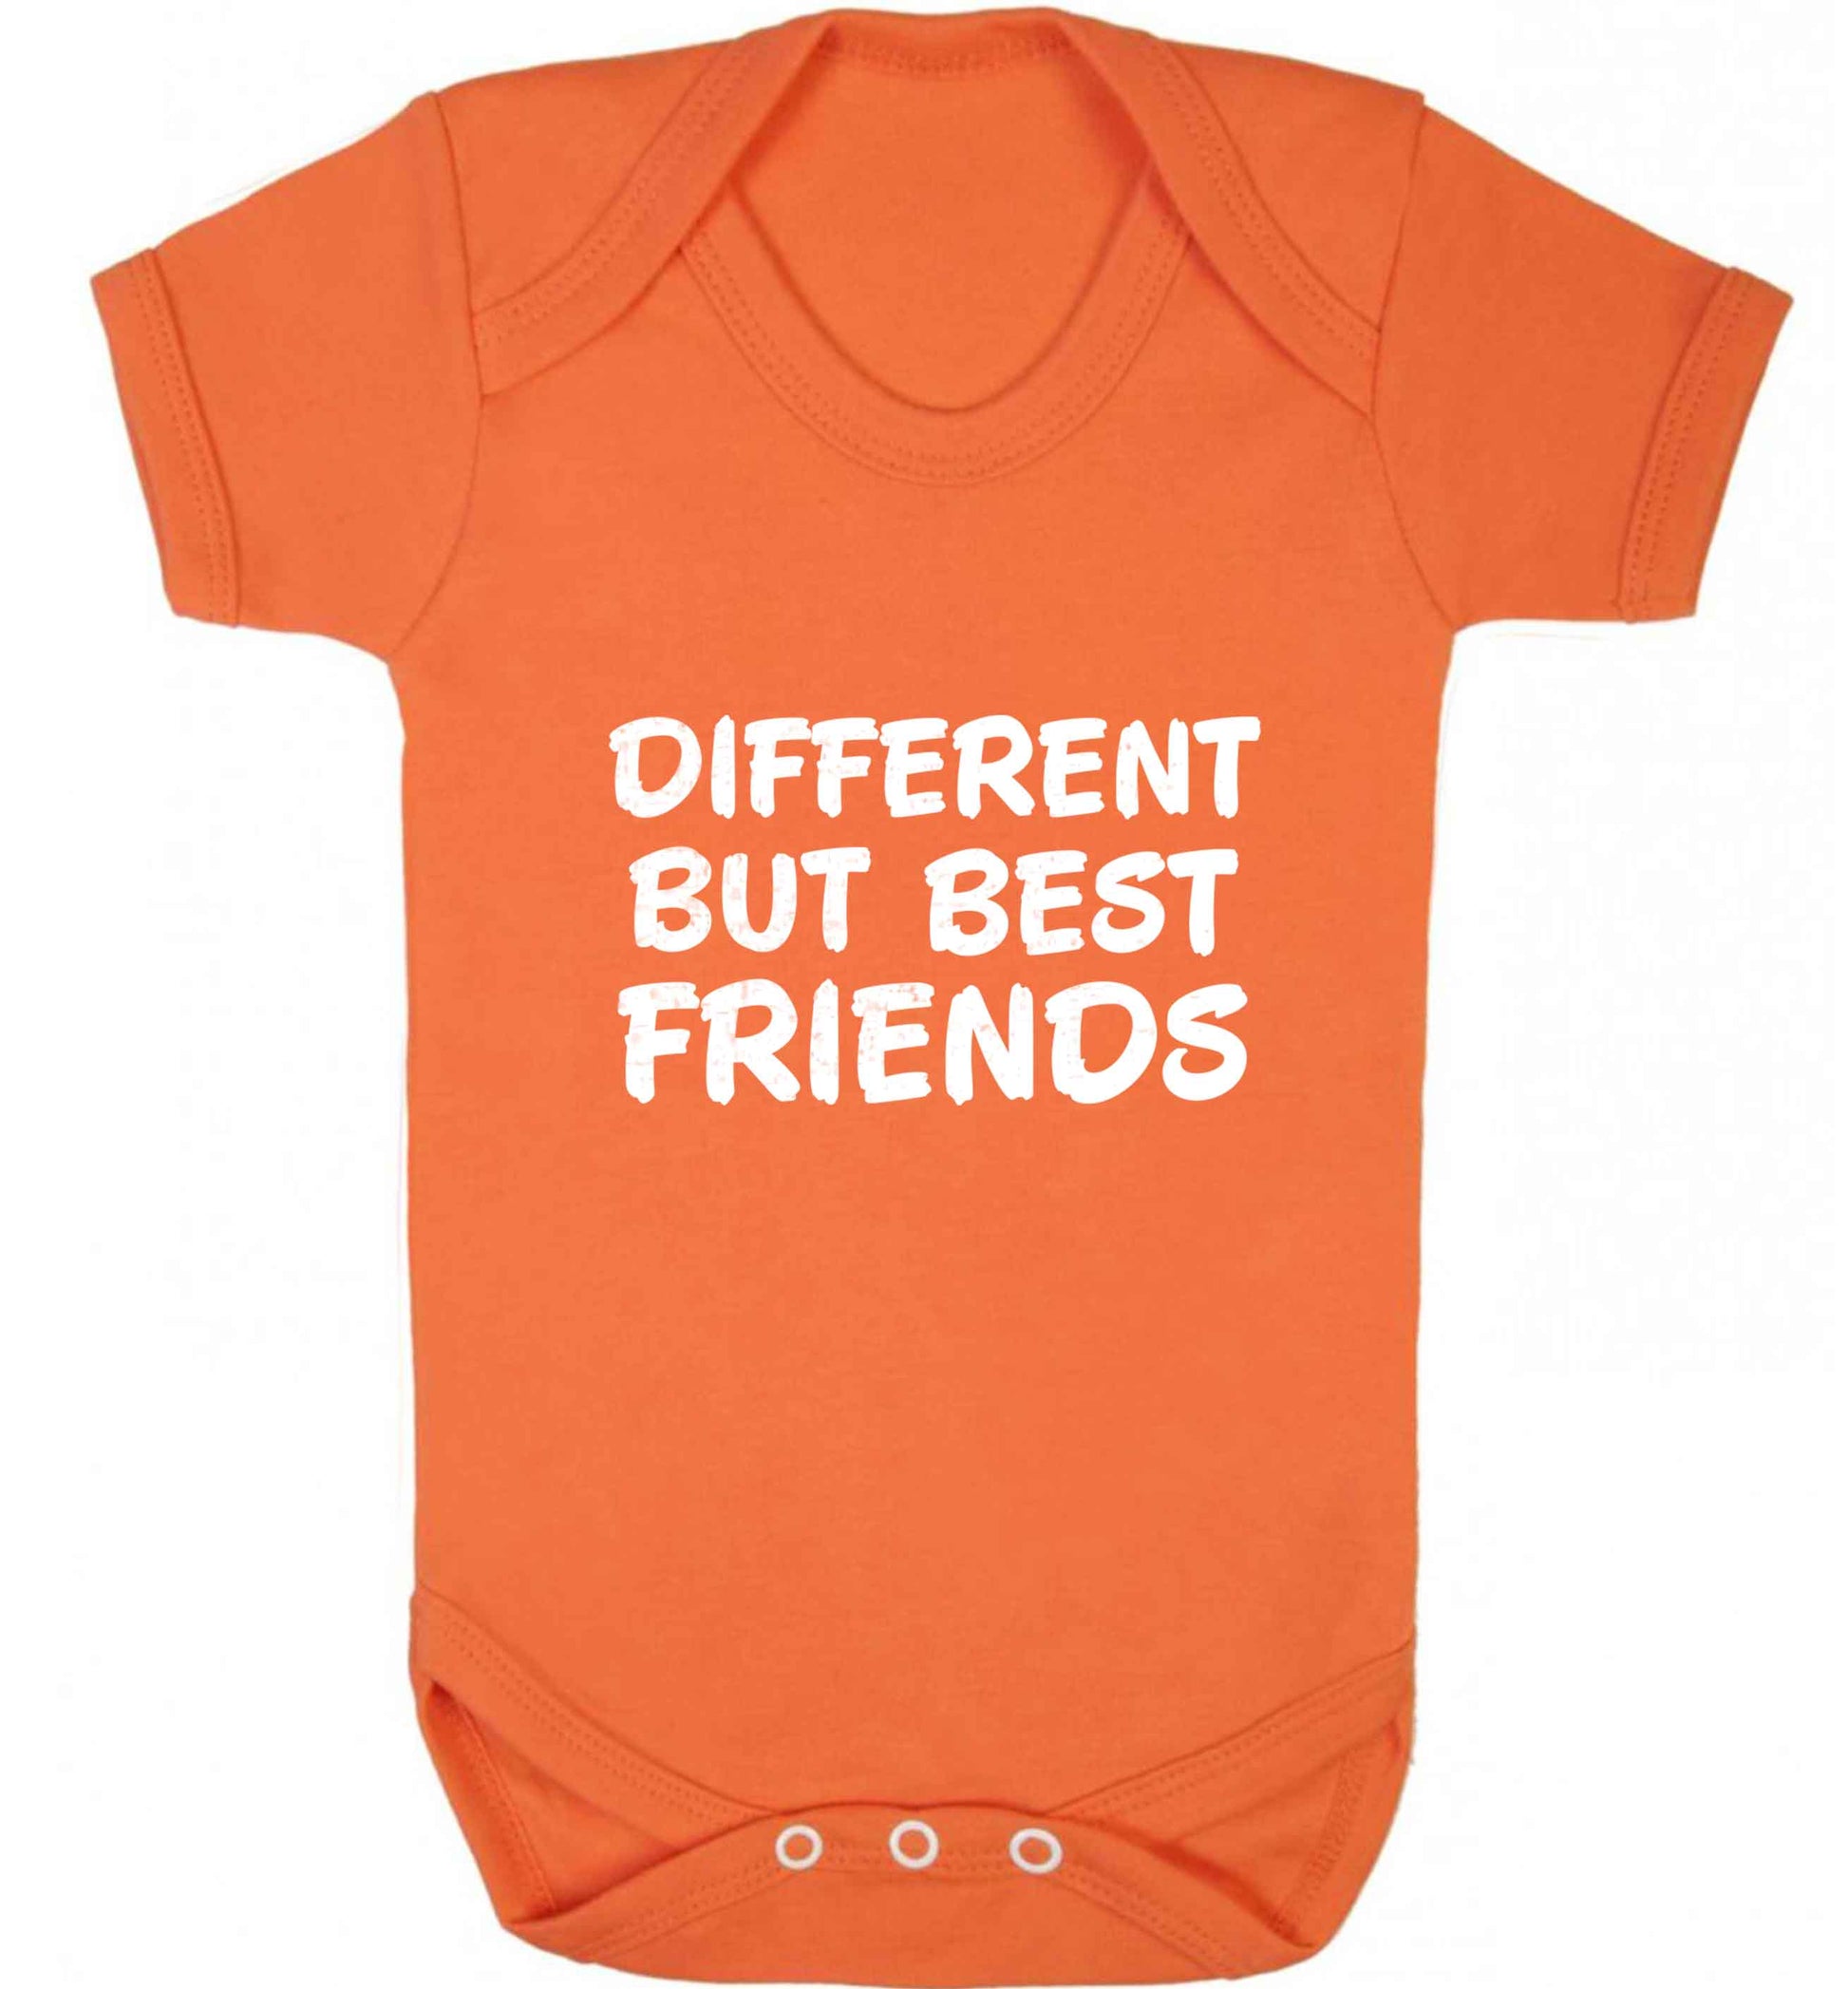 Different but best friends baby vest orange 18-24 months